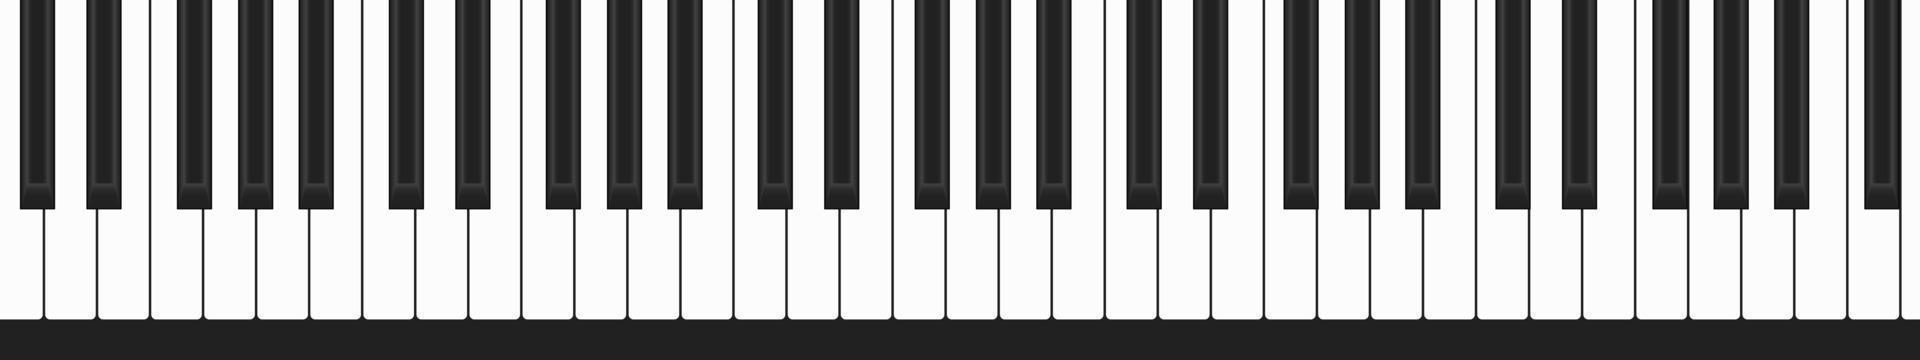 teclado de piano, fileira de teclas pretas e brancas, grandes notas clássicas, ilustração de música vetorial vetor